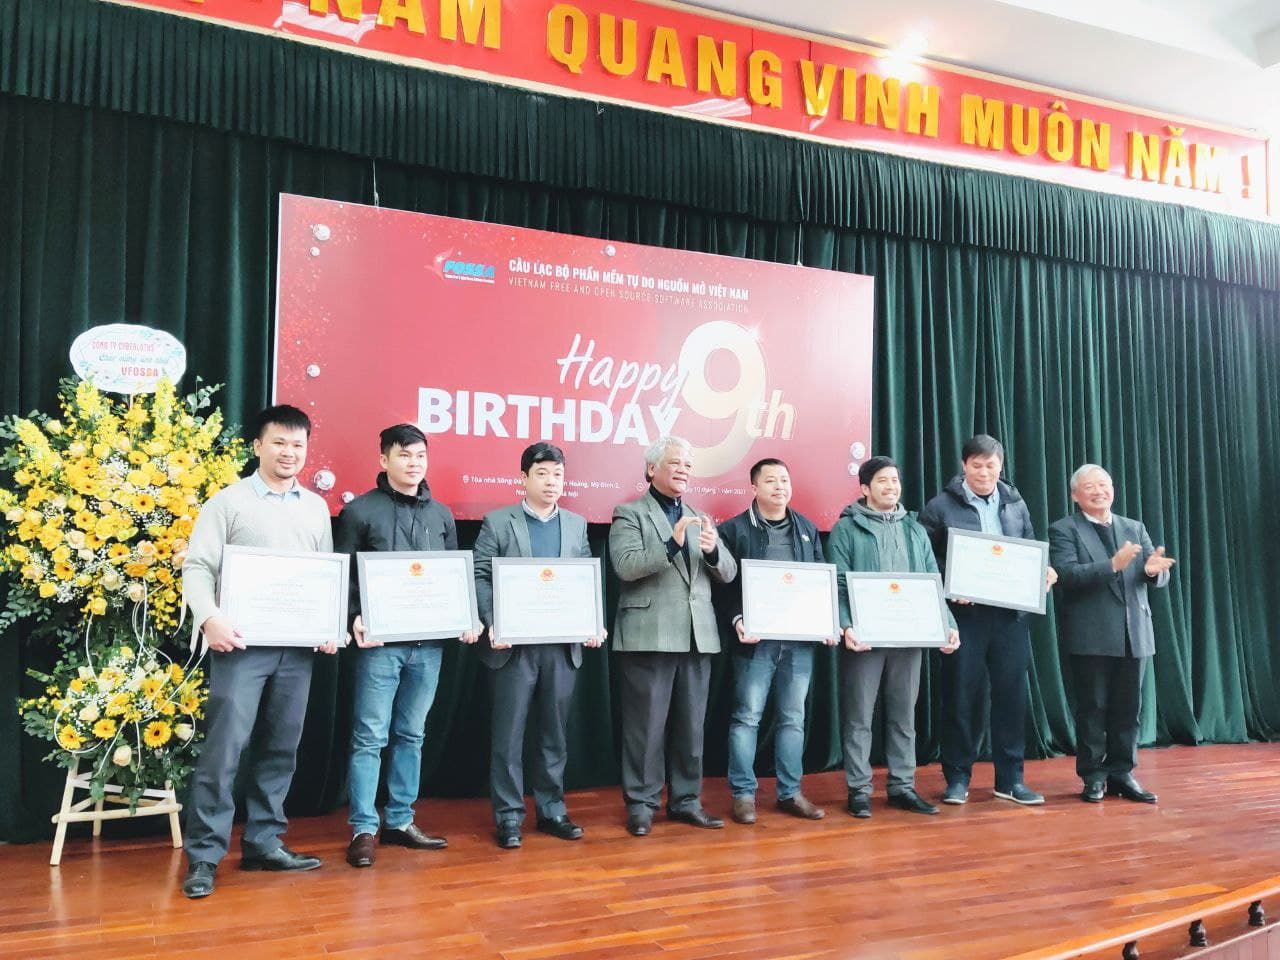 Phó chủ tịch Hội Tin học Việt Nam (VAIP) Phùng Văn Ổn trao bằng khen cho 6 tập thể và 2 cá nhân. Tổng giám đốc VINADES Nguyễn Thế Hùng (ngoài cùng bên trái ảnh) đại diện công ty VINADES nhận bằng khen.